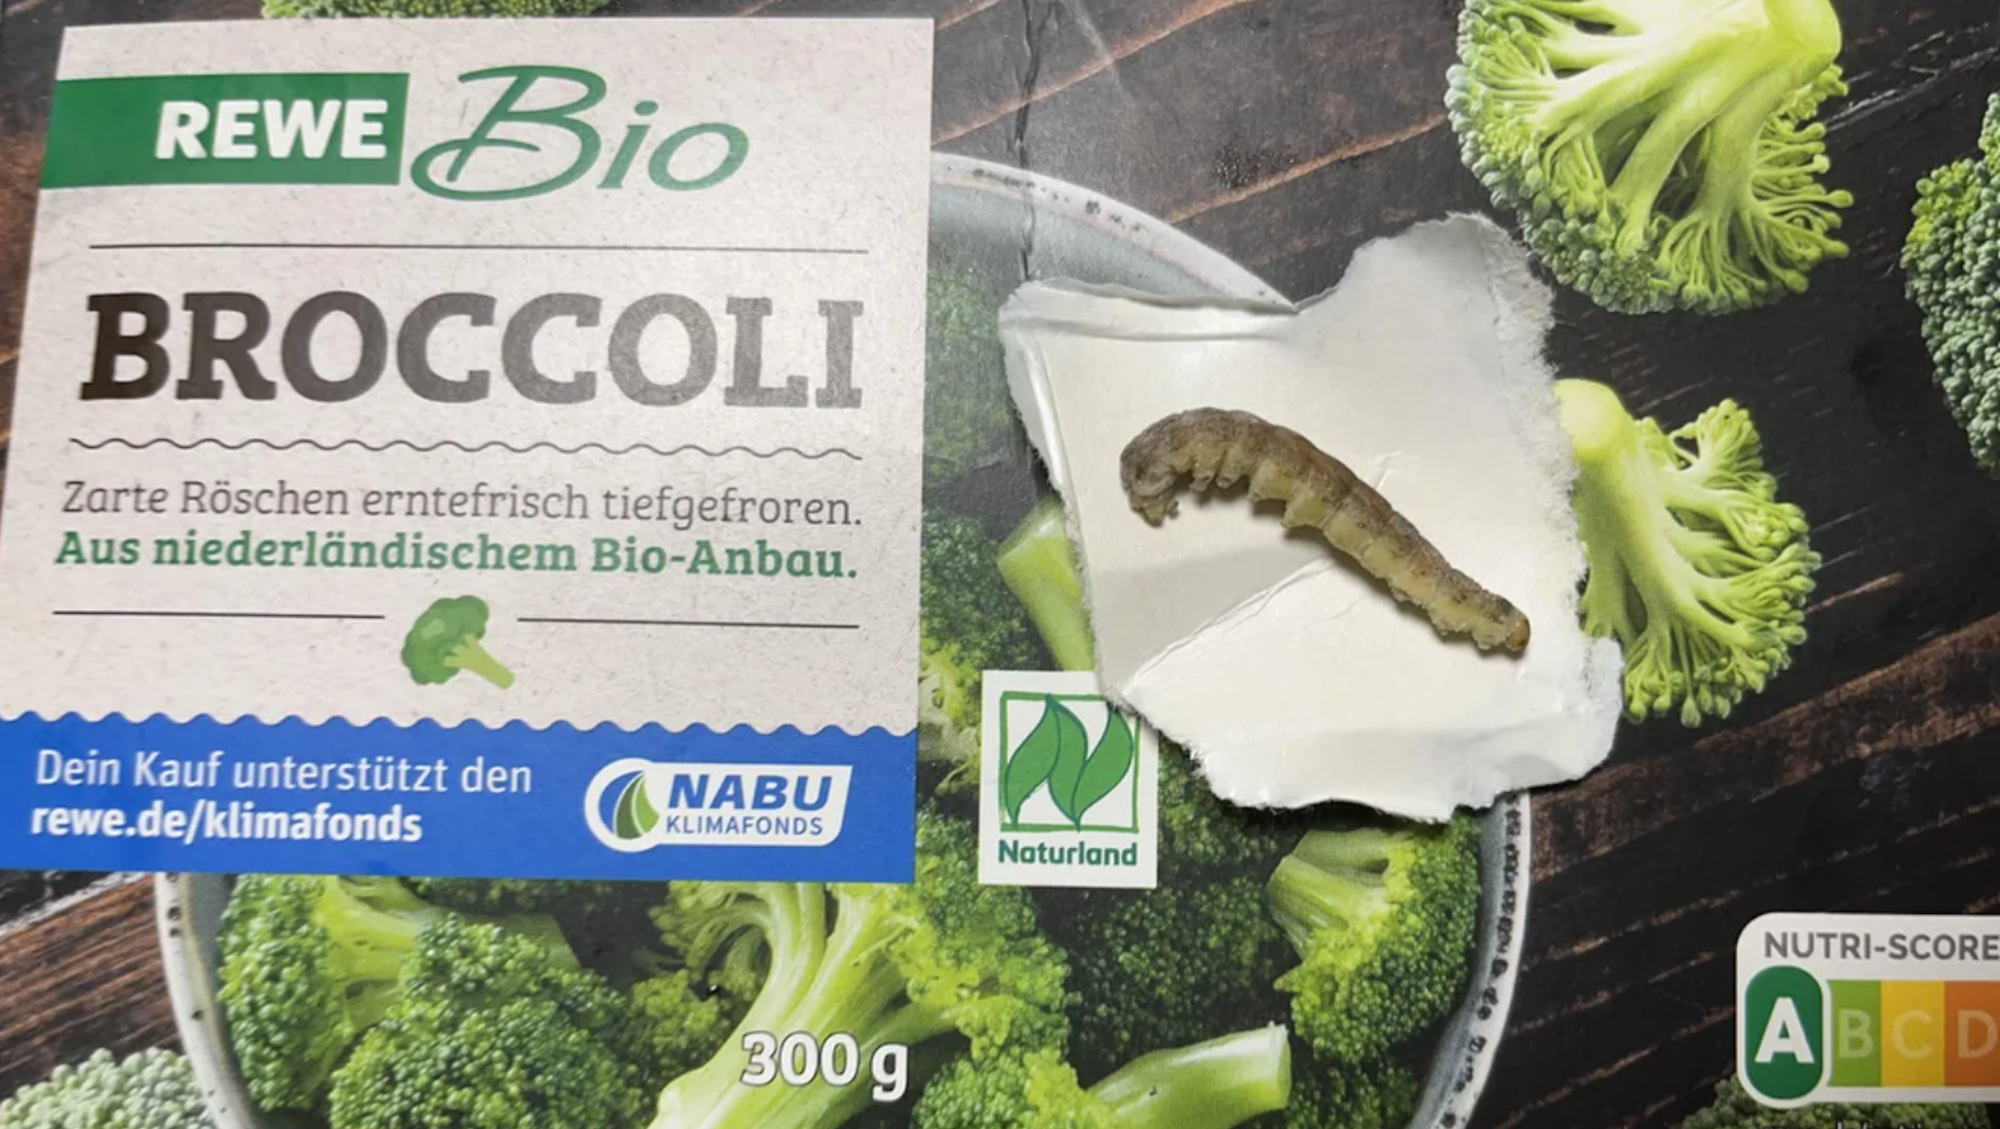 Eine Raupe liegt auf der Broccoli-Verpackung.